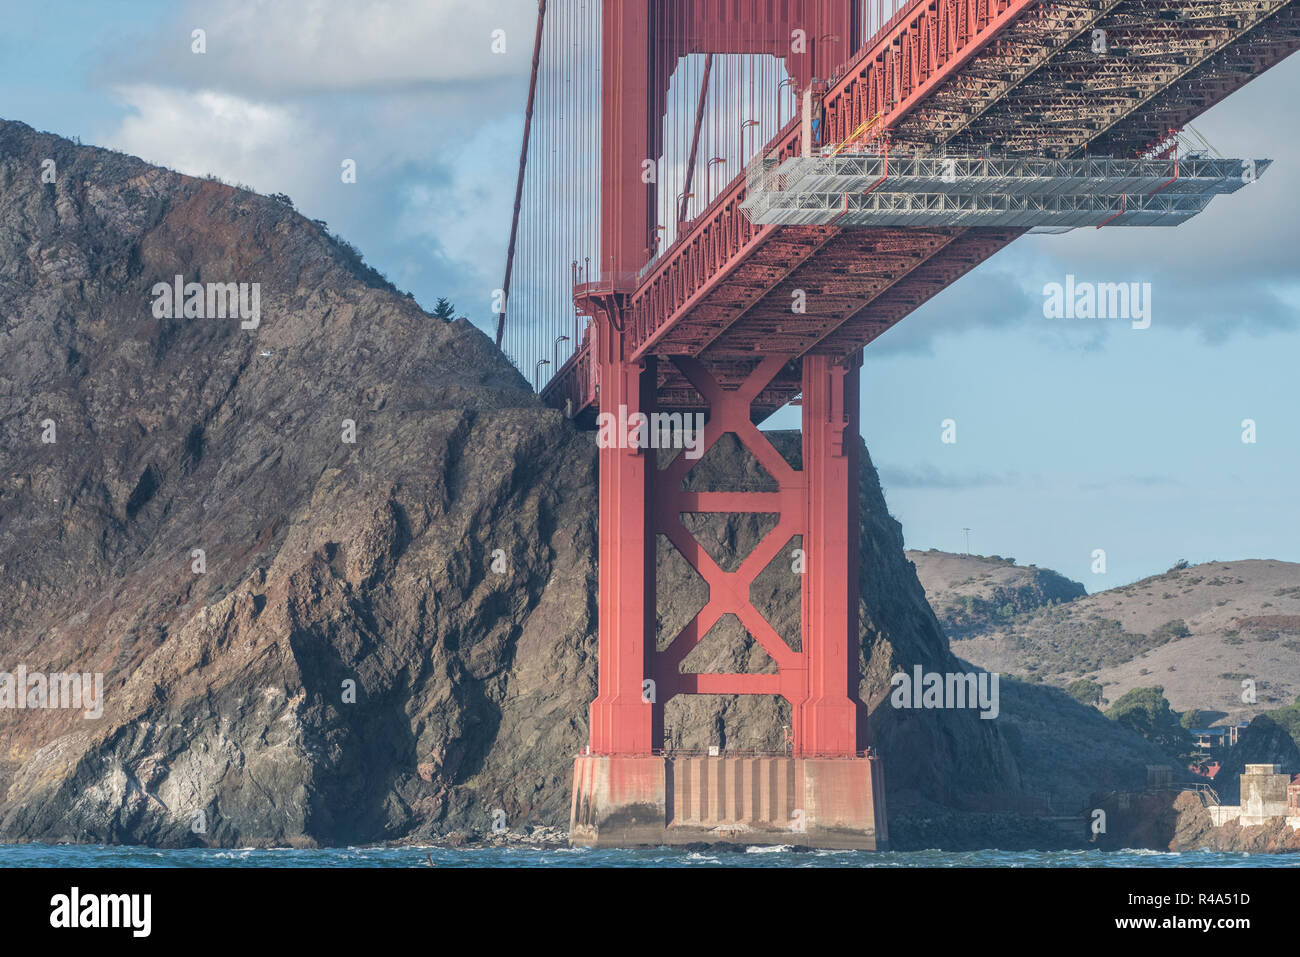 El famoso puente Golden Gate fotografiados desde un ángulo diferente, desde abajo en la Bahía de San Francisco desde dentro de un barco. Foto de stock